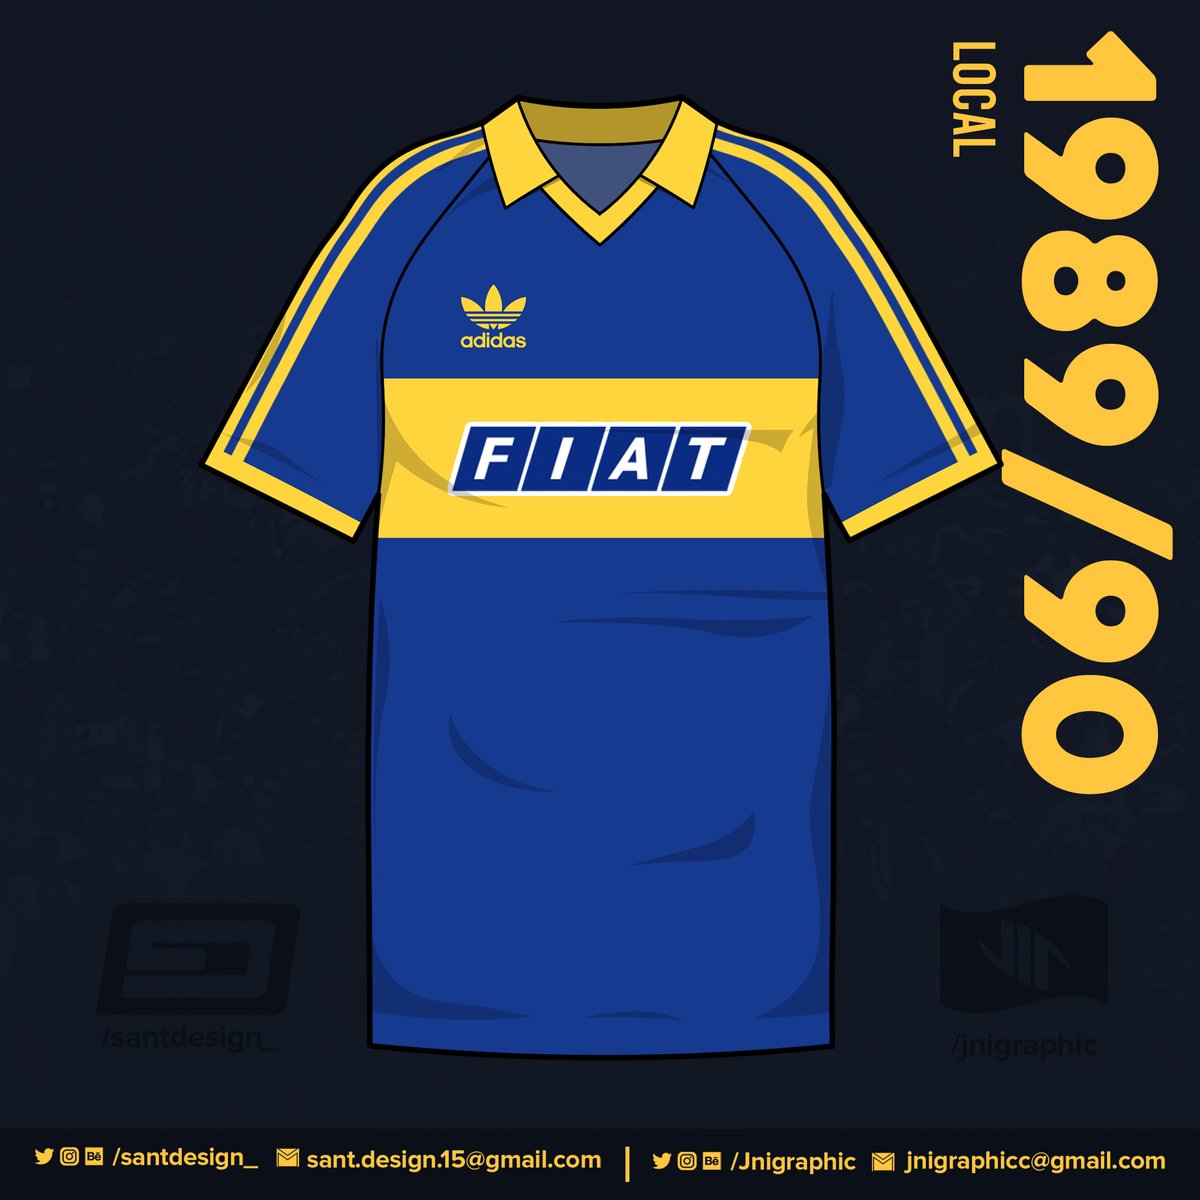 1989: Boca cambia de sponsor, ahora le toca a Fiat. Es con esta camiseta que Boca gana la Supercopa Sudamericana de ese año.